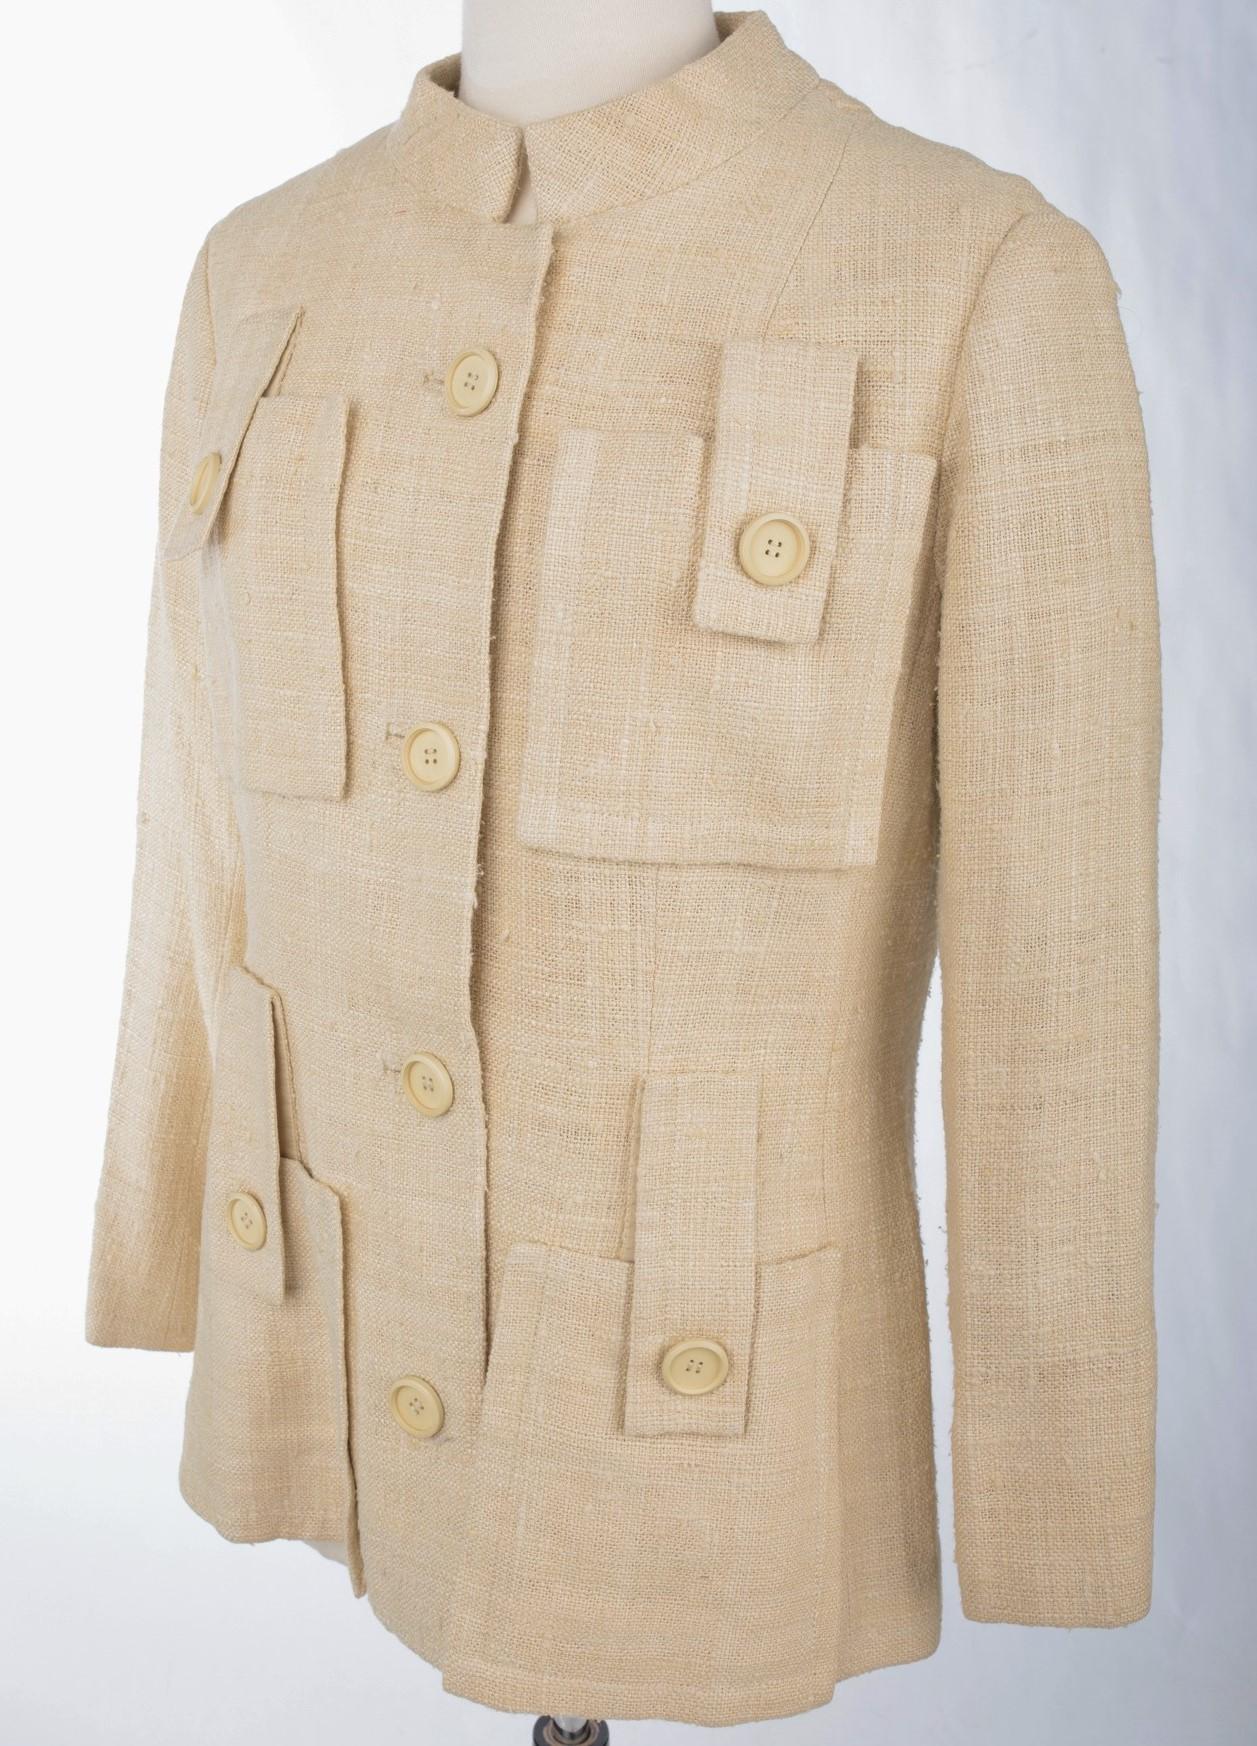 Circa 1968 - 1972

Frankreich

Wunderschöne Saharienne-Jacke aus beigem Leinen und Wildseide, wahrscheinlich ein unsignierter Prototyp für die Haute Couture, aus den Jahren 1968-1972. Taillierter Schnitt mit Mao-Kragen, der mit einem Druckknopf